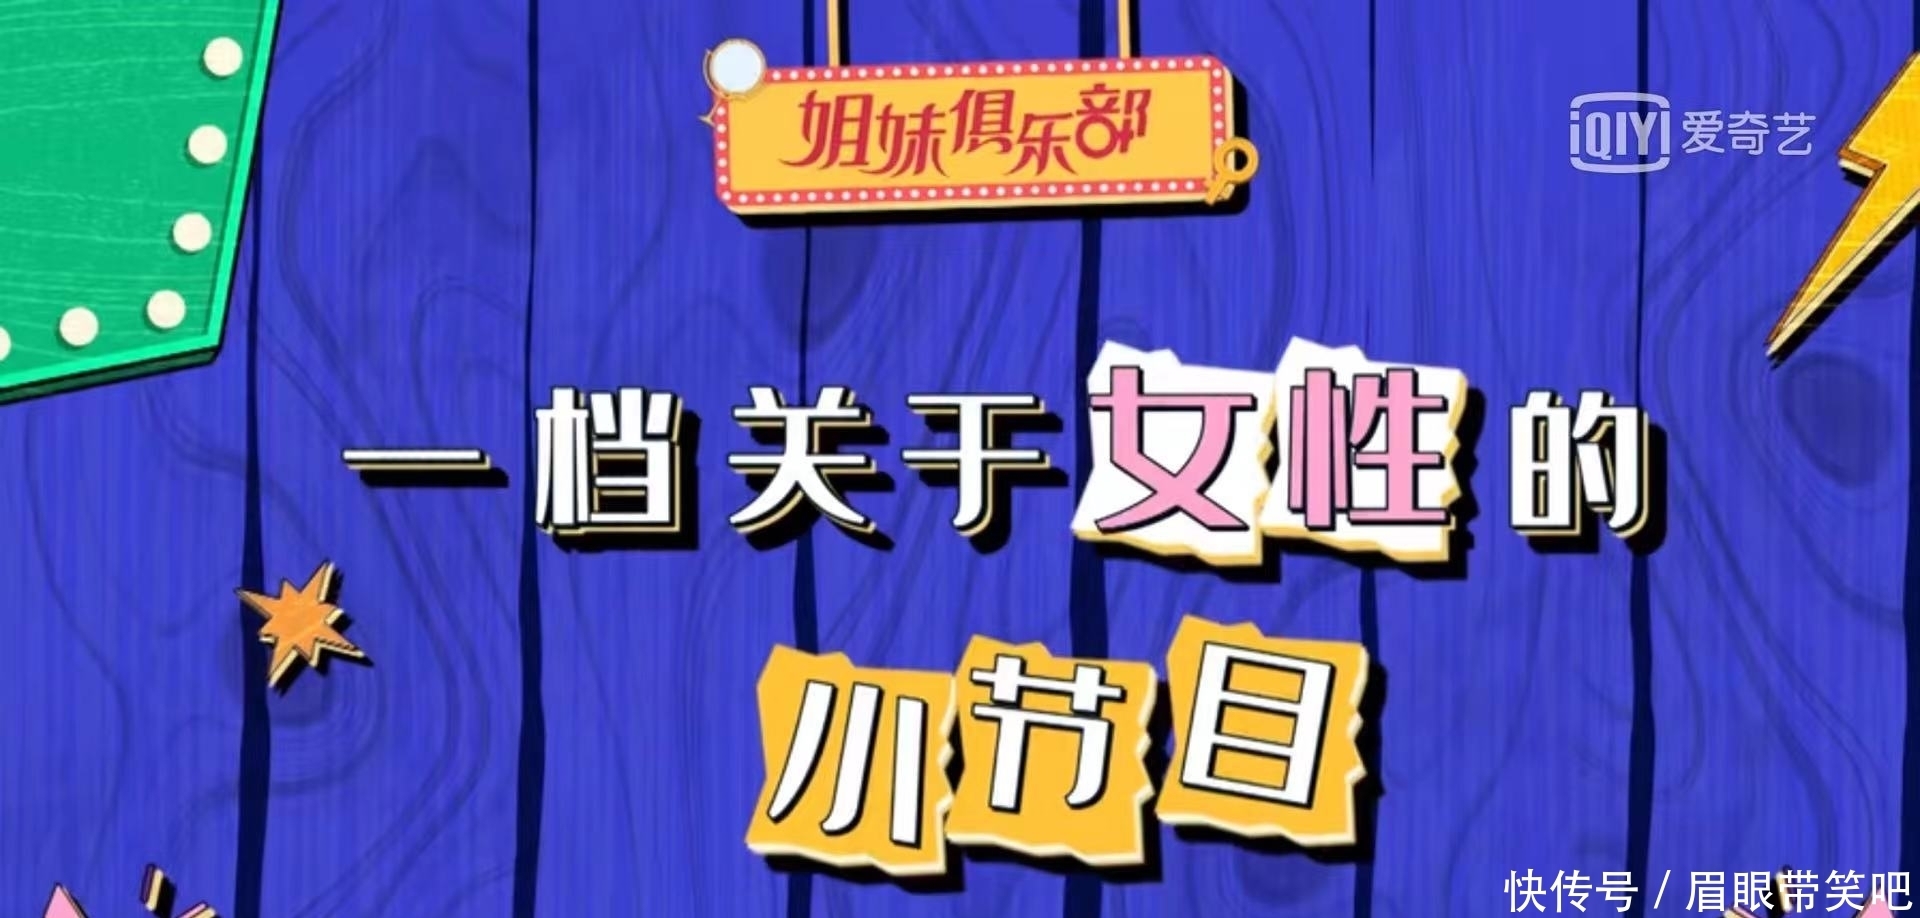 杨子姗 姐妹俱乐部，综艺热播榜第8名，欢乐开场。